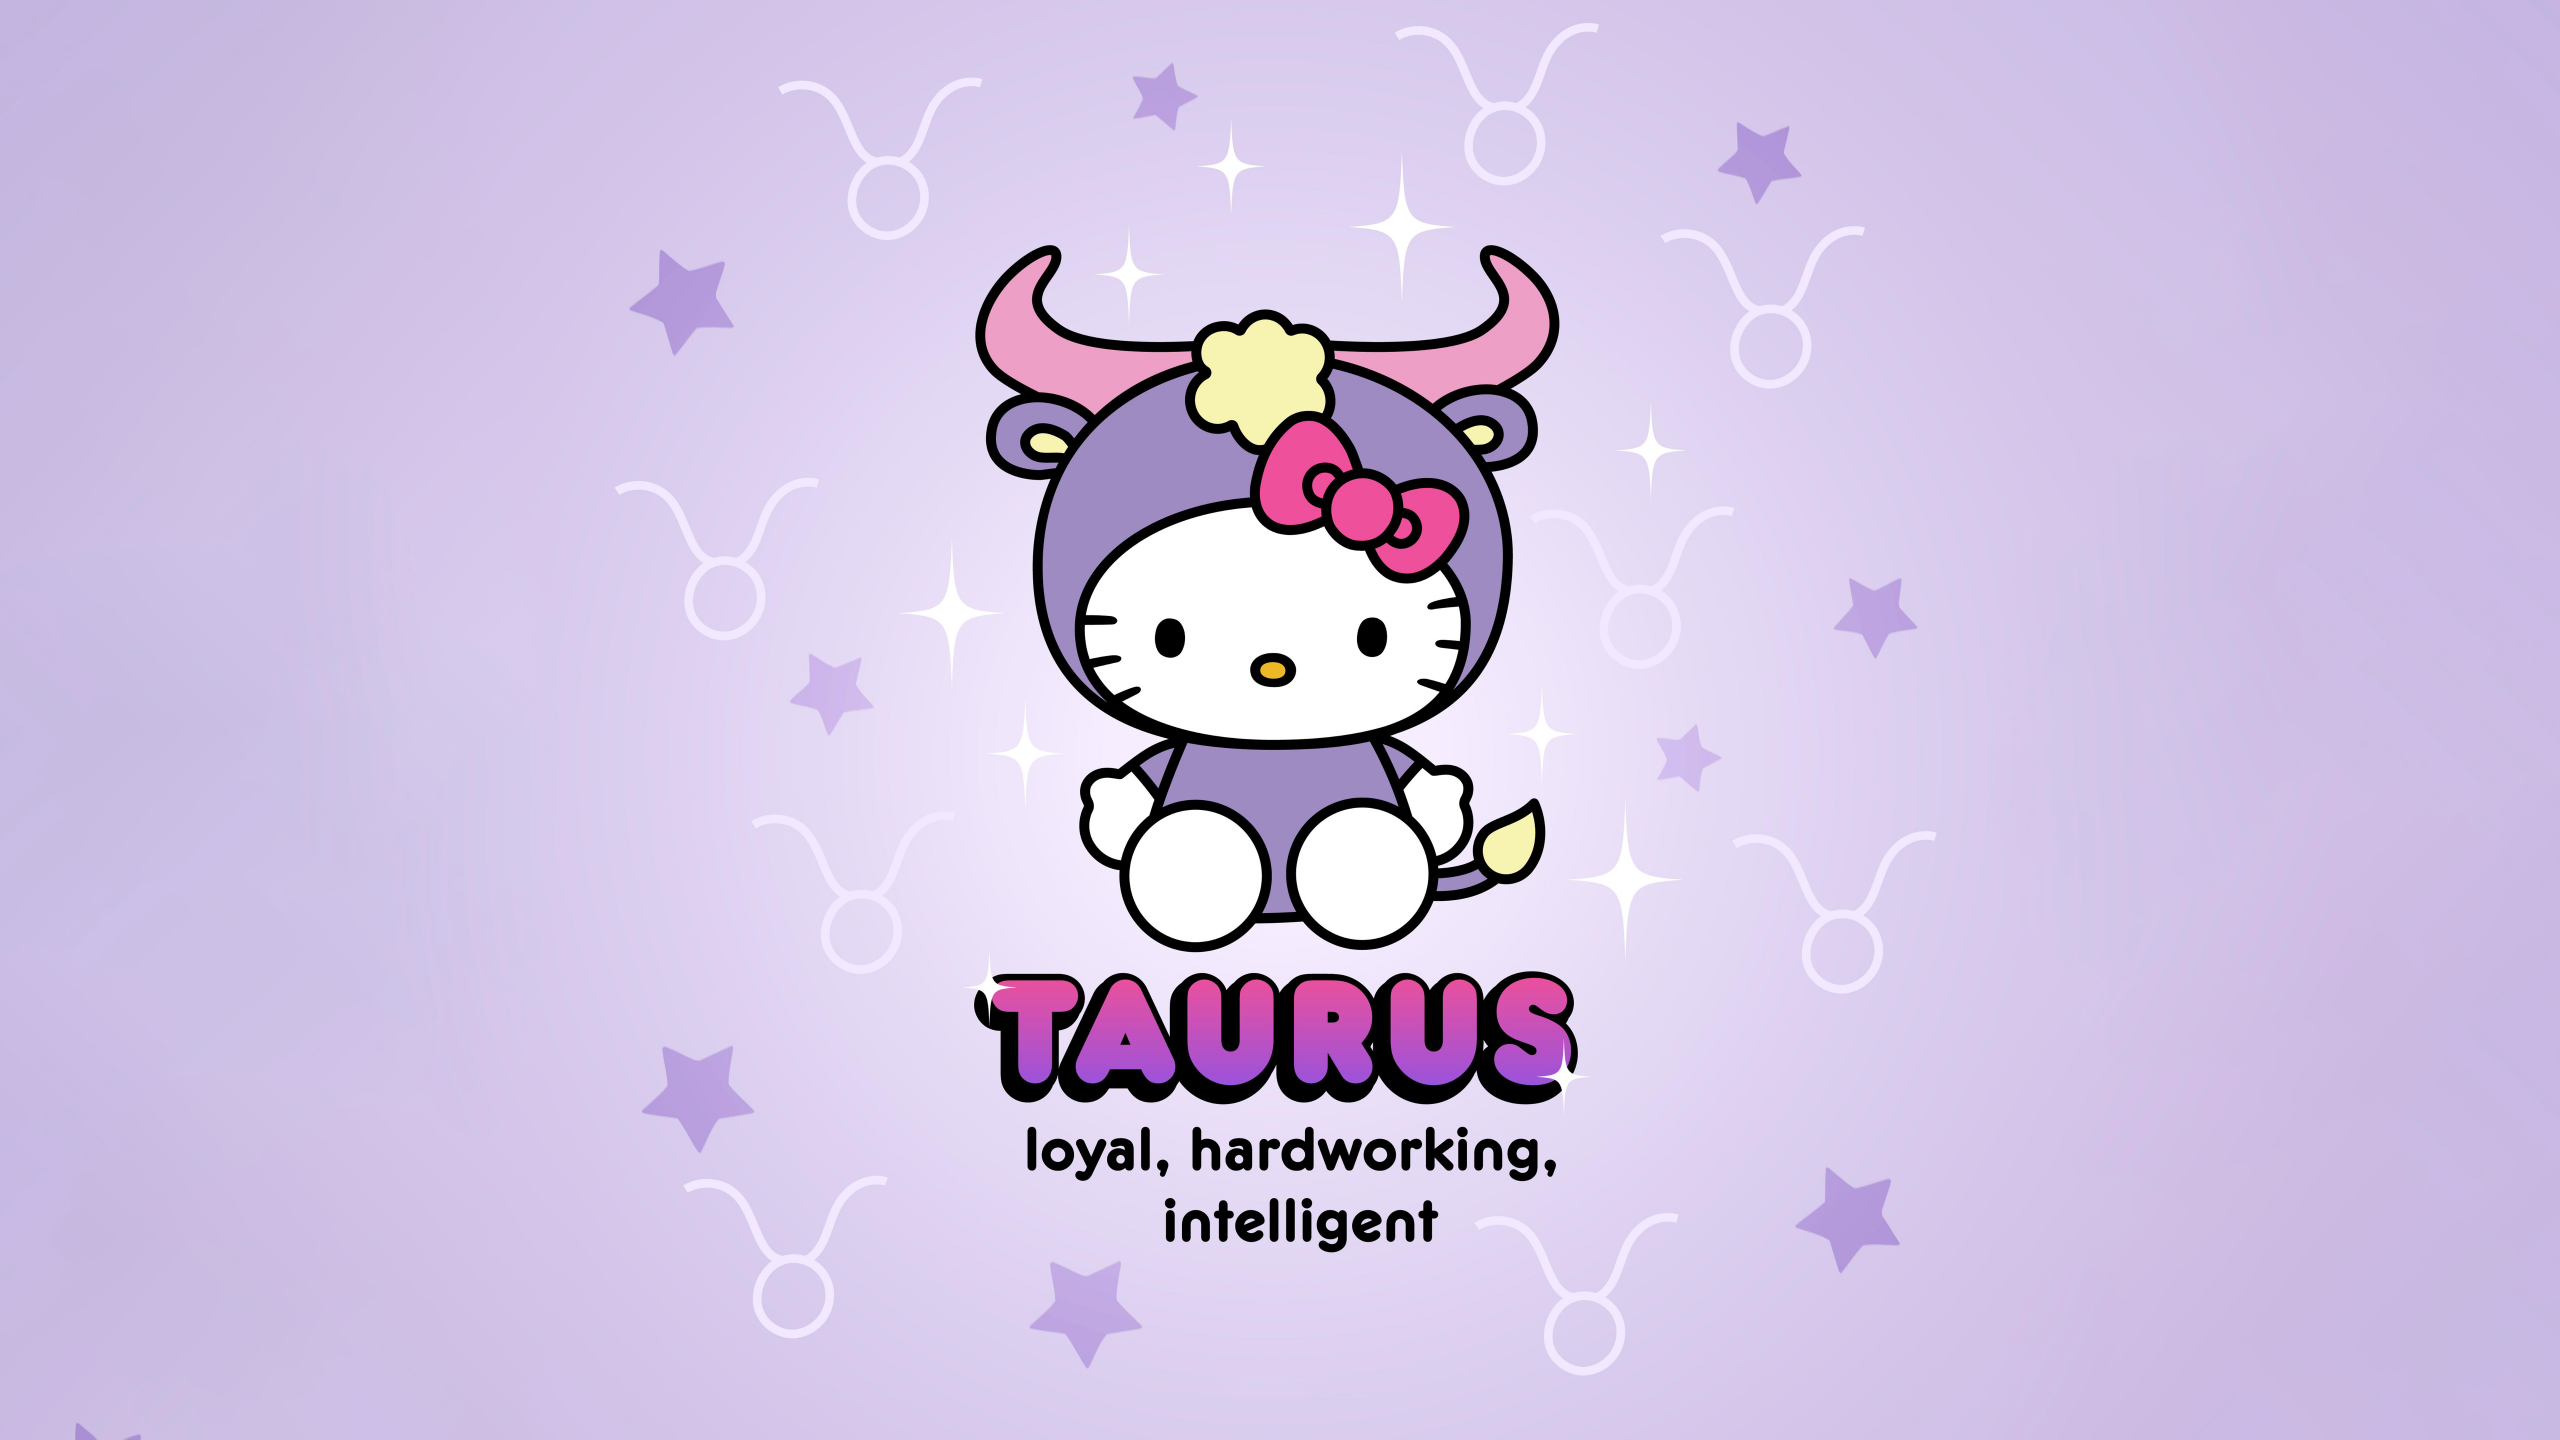 Taurus Wallpaper Images  Free Download on Freepik